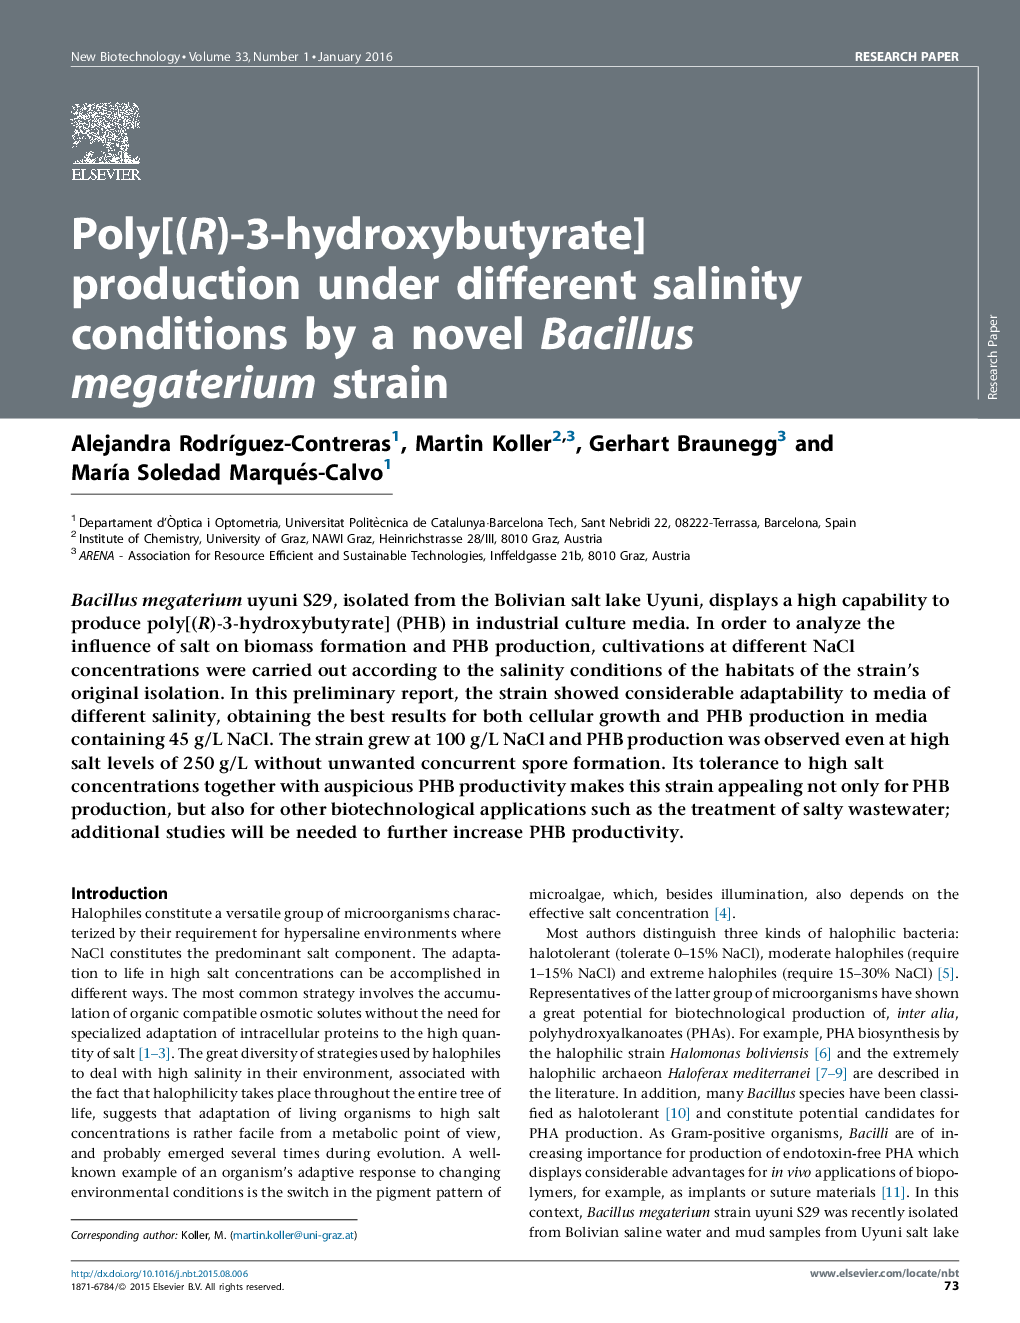 تولیدپلی [(R) -3-هیدروکسی بوتی استر) تحت شرایط مختلف شوری توسط یک گونه جدید Bacillus megaterium strain